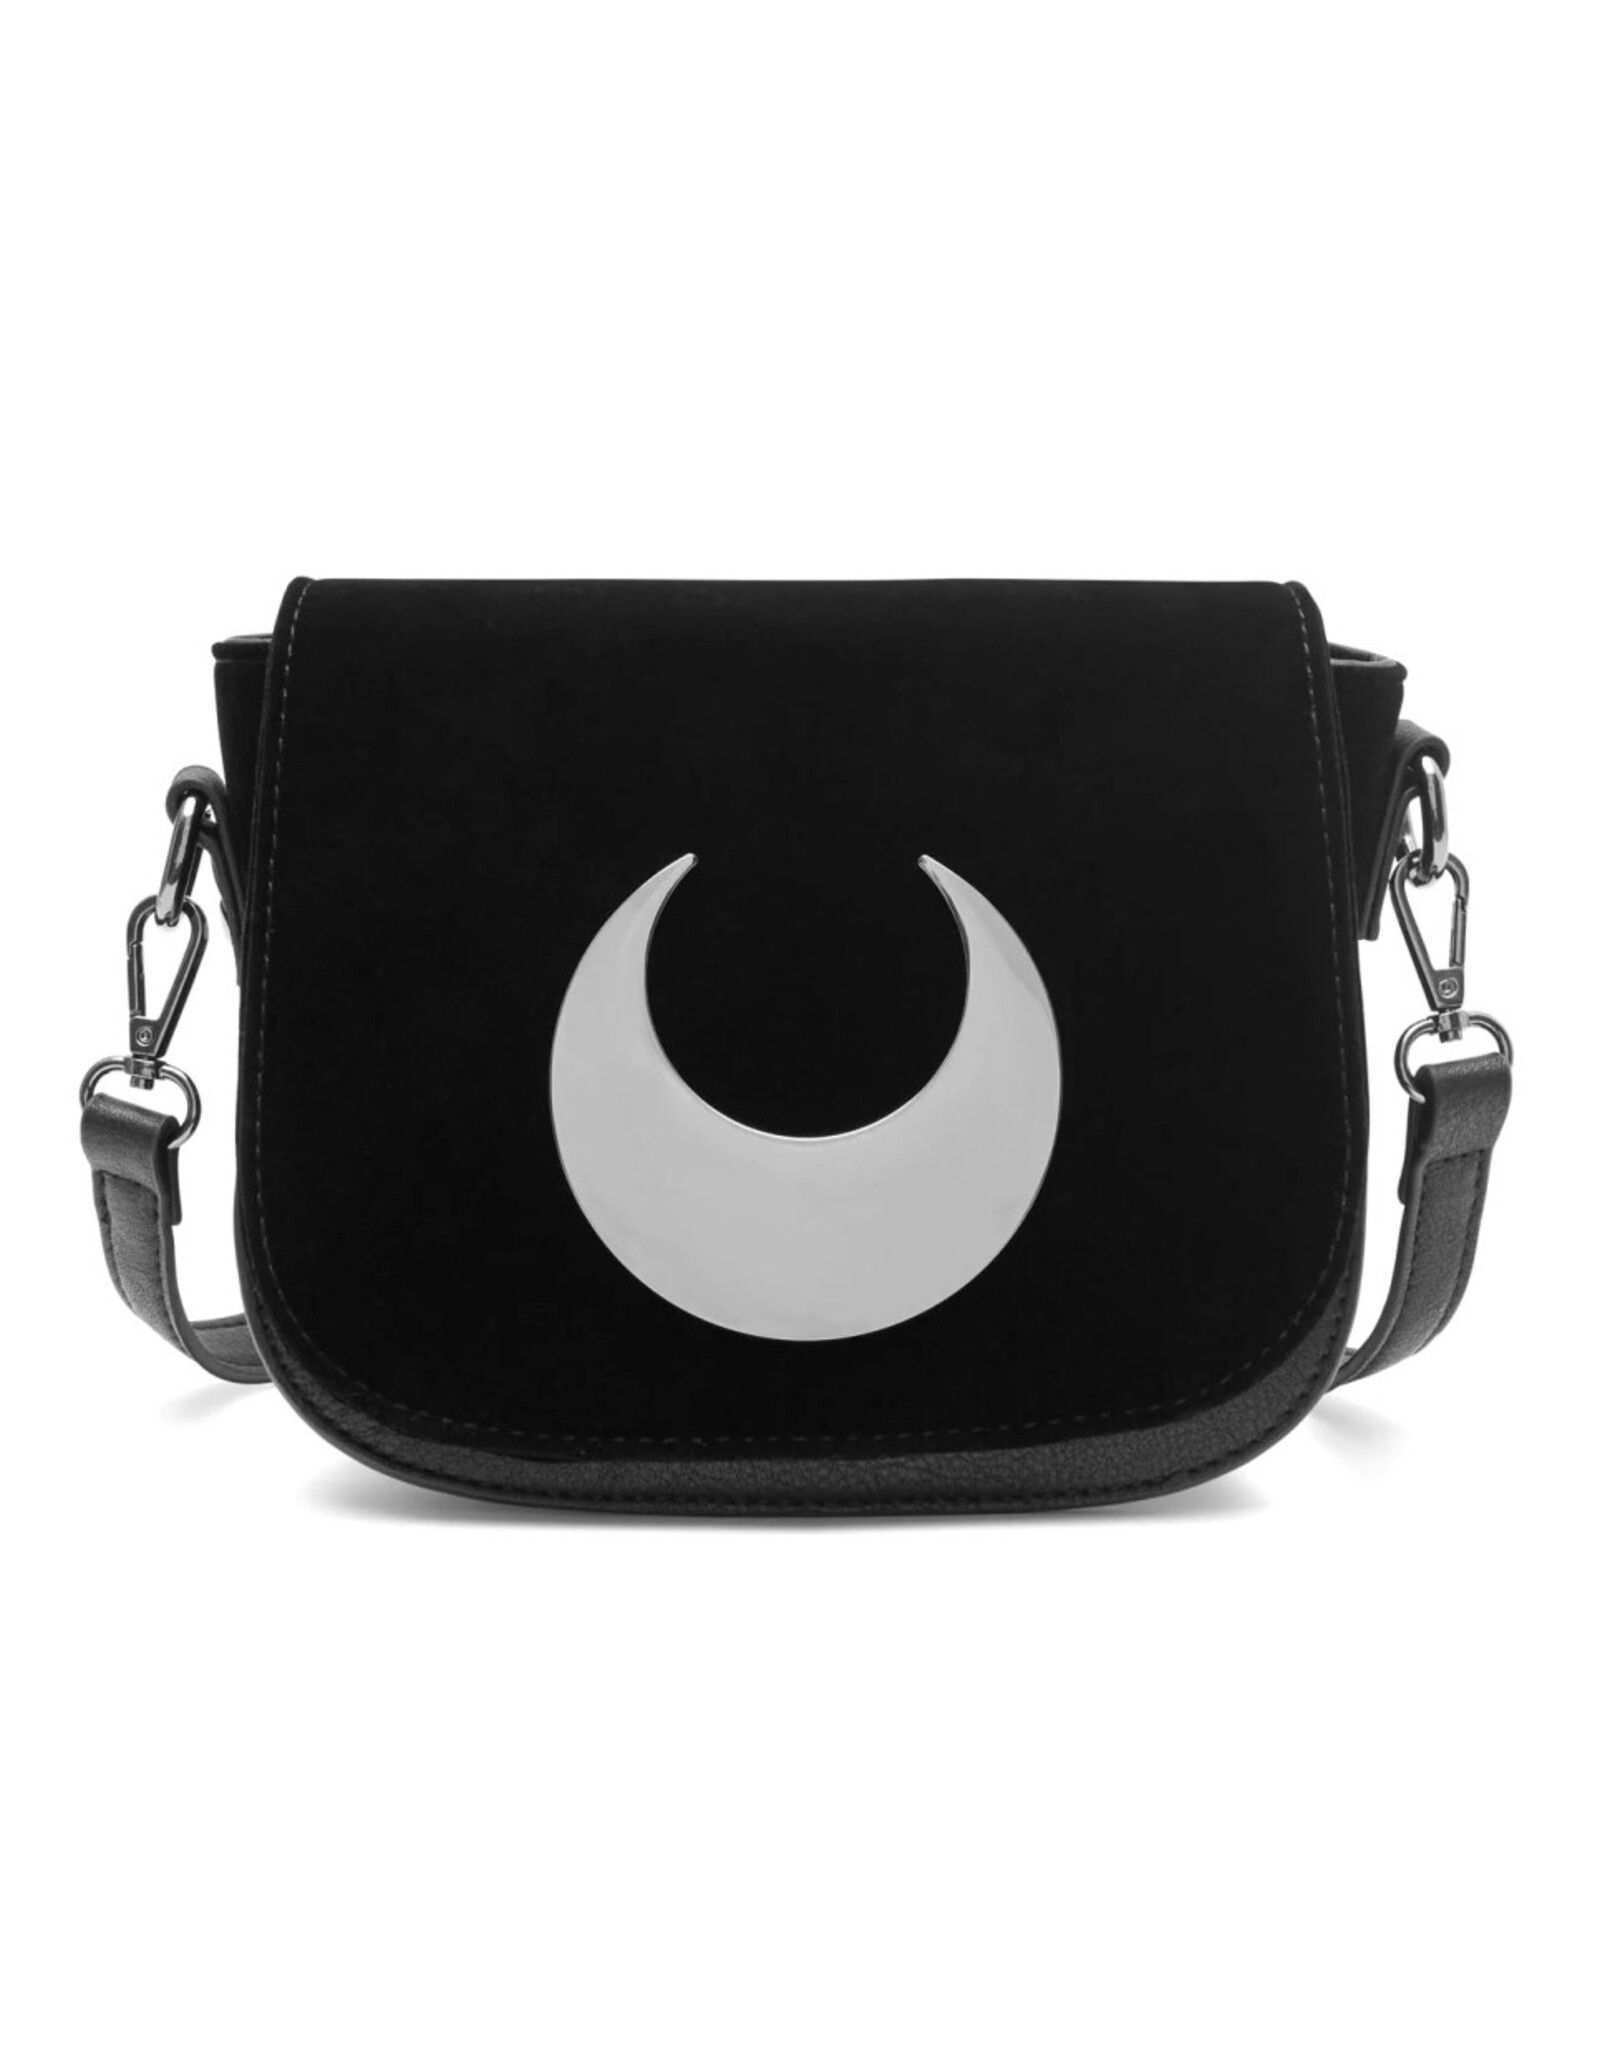 Killstar Killstar bags and accessories - Killstar Callicto handbag